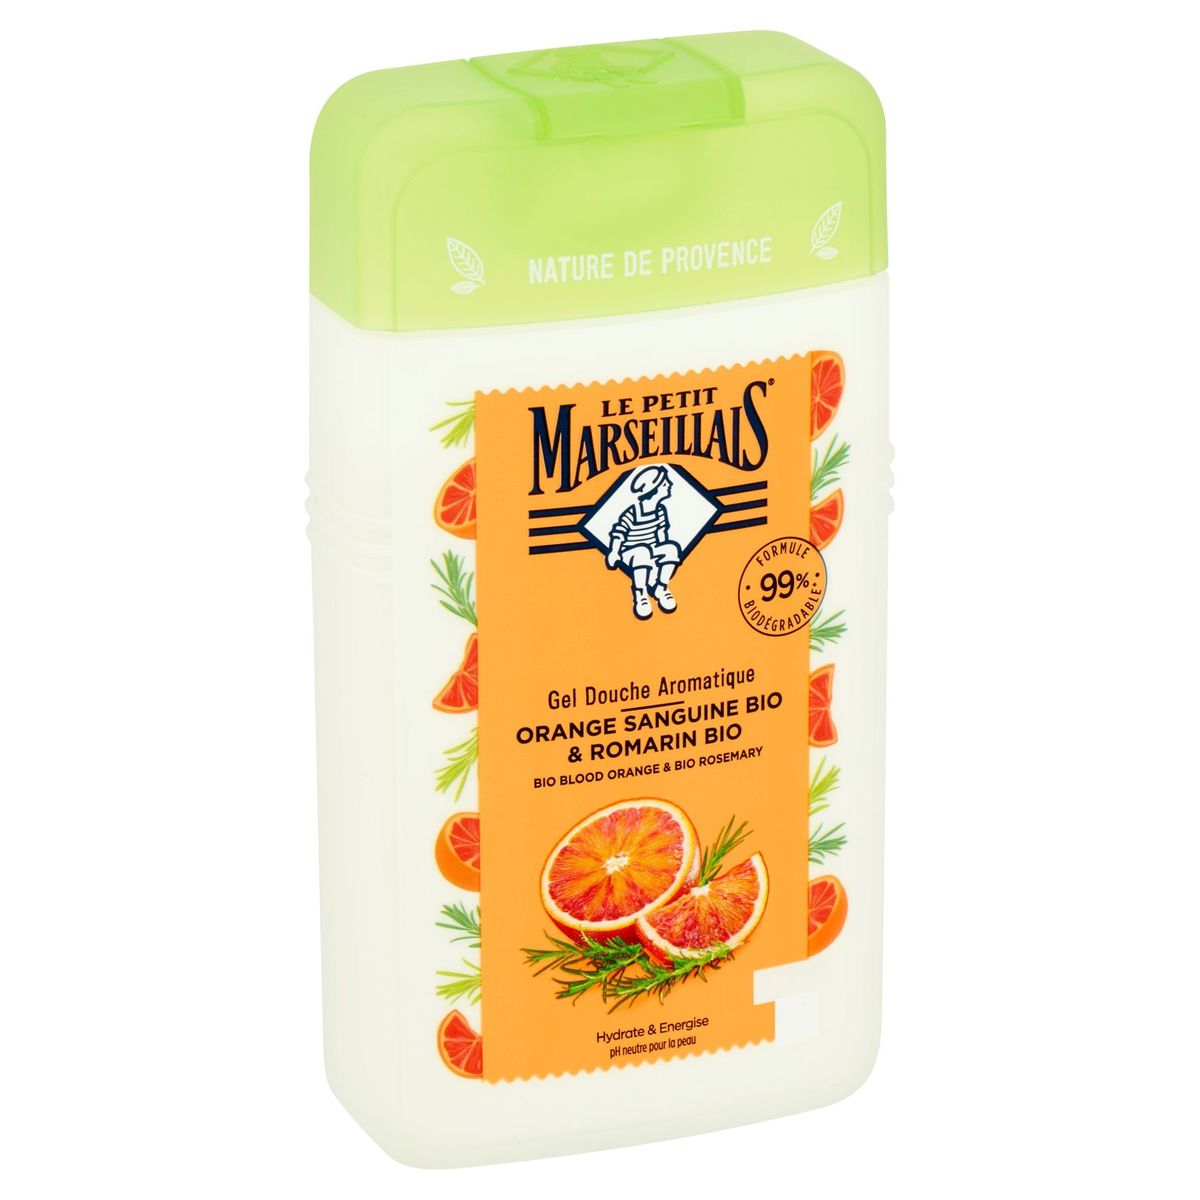 Le Petit Marseillais Gel Douche Aromatique Orange Sanguine Bio & Romarin Bio 250 ml